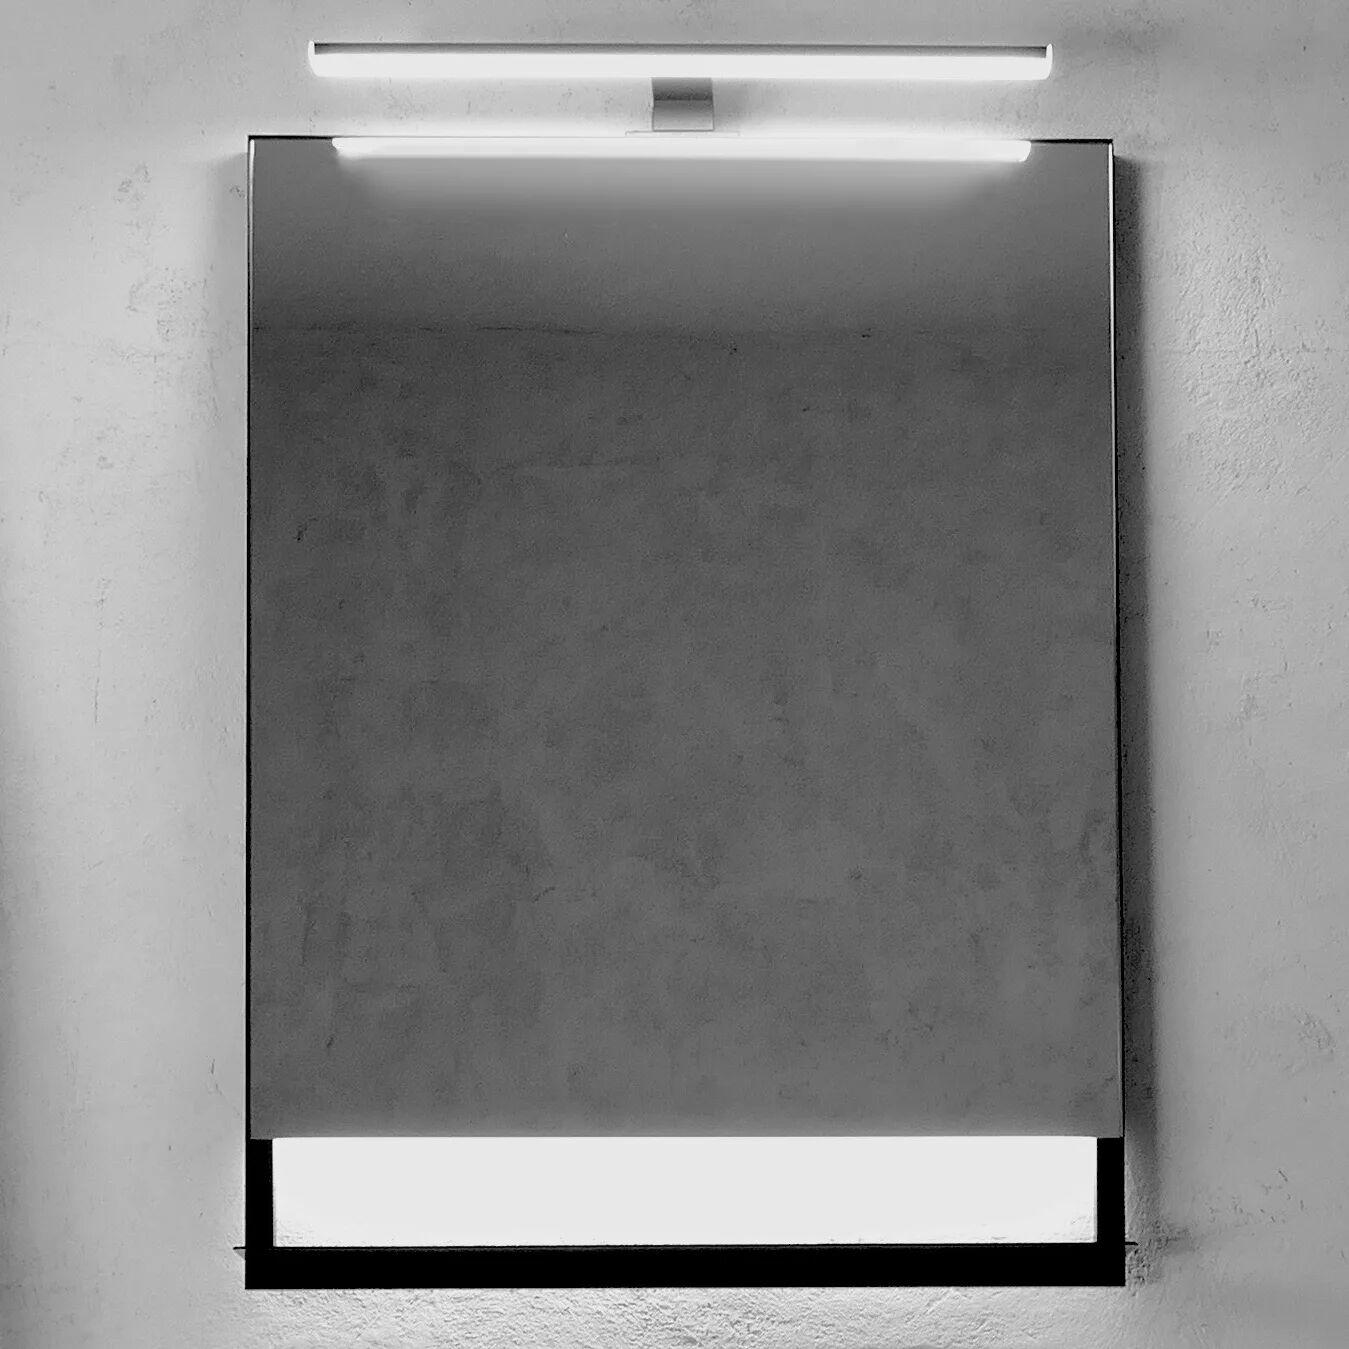 Megabad Profi Collection L3S2 LED Lichtspiegel 120 x 80 cm L3S-2 B: 120 H: 80 cm schwarz MBL3S212080